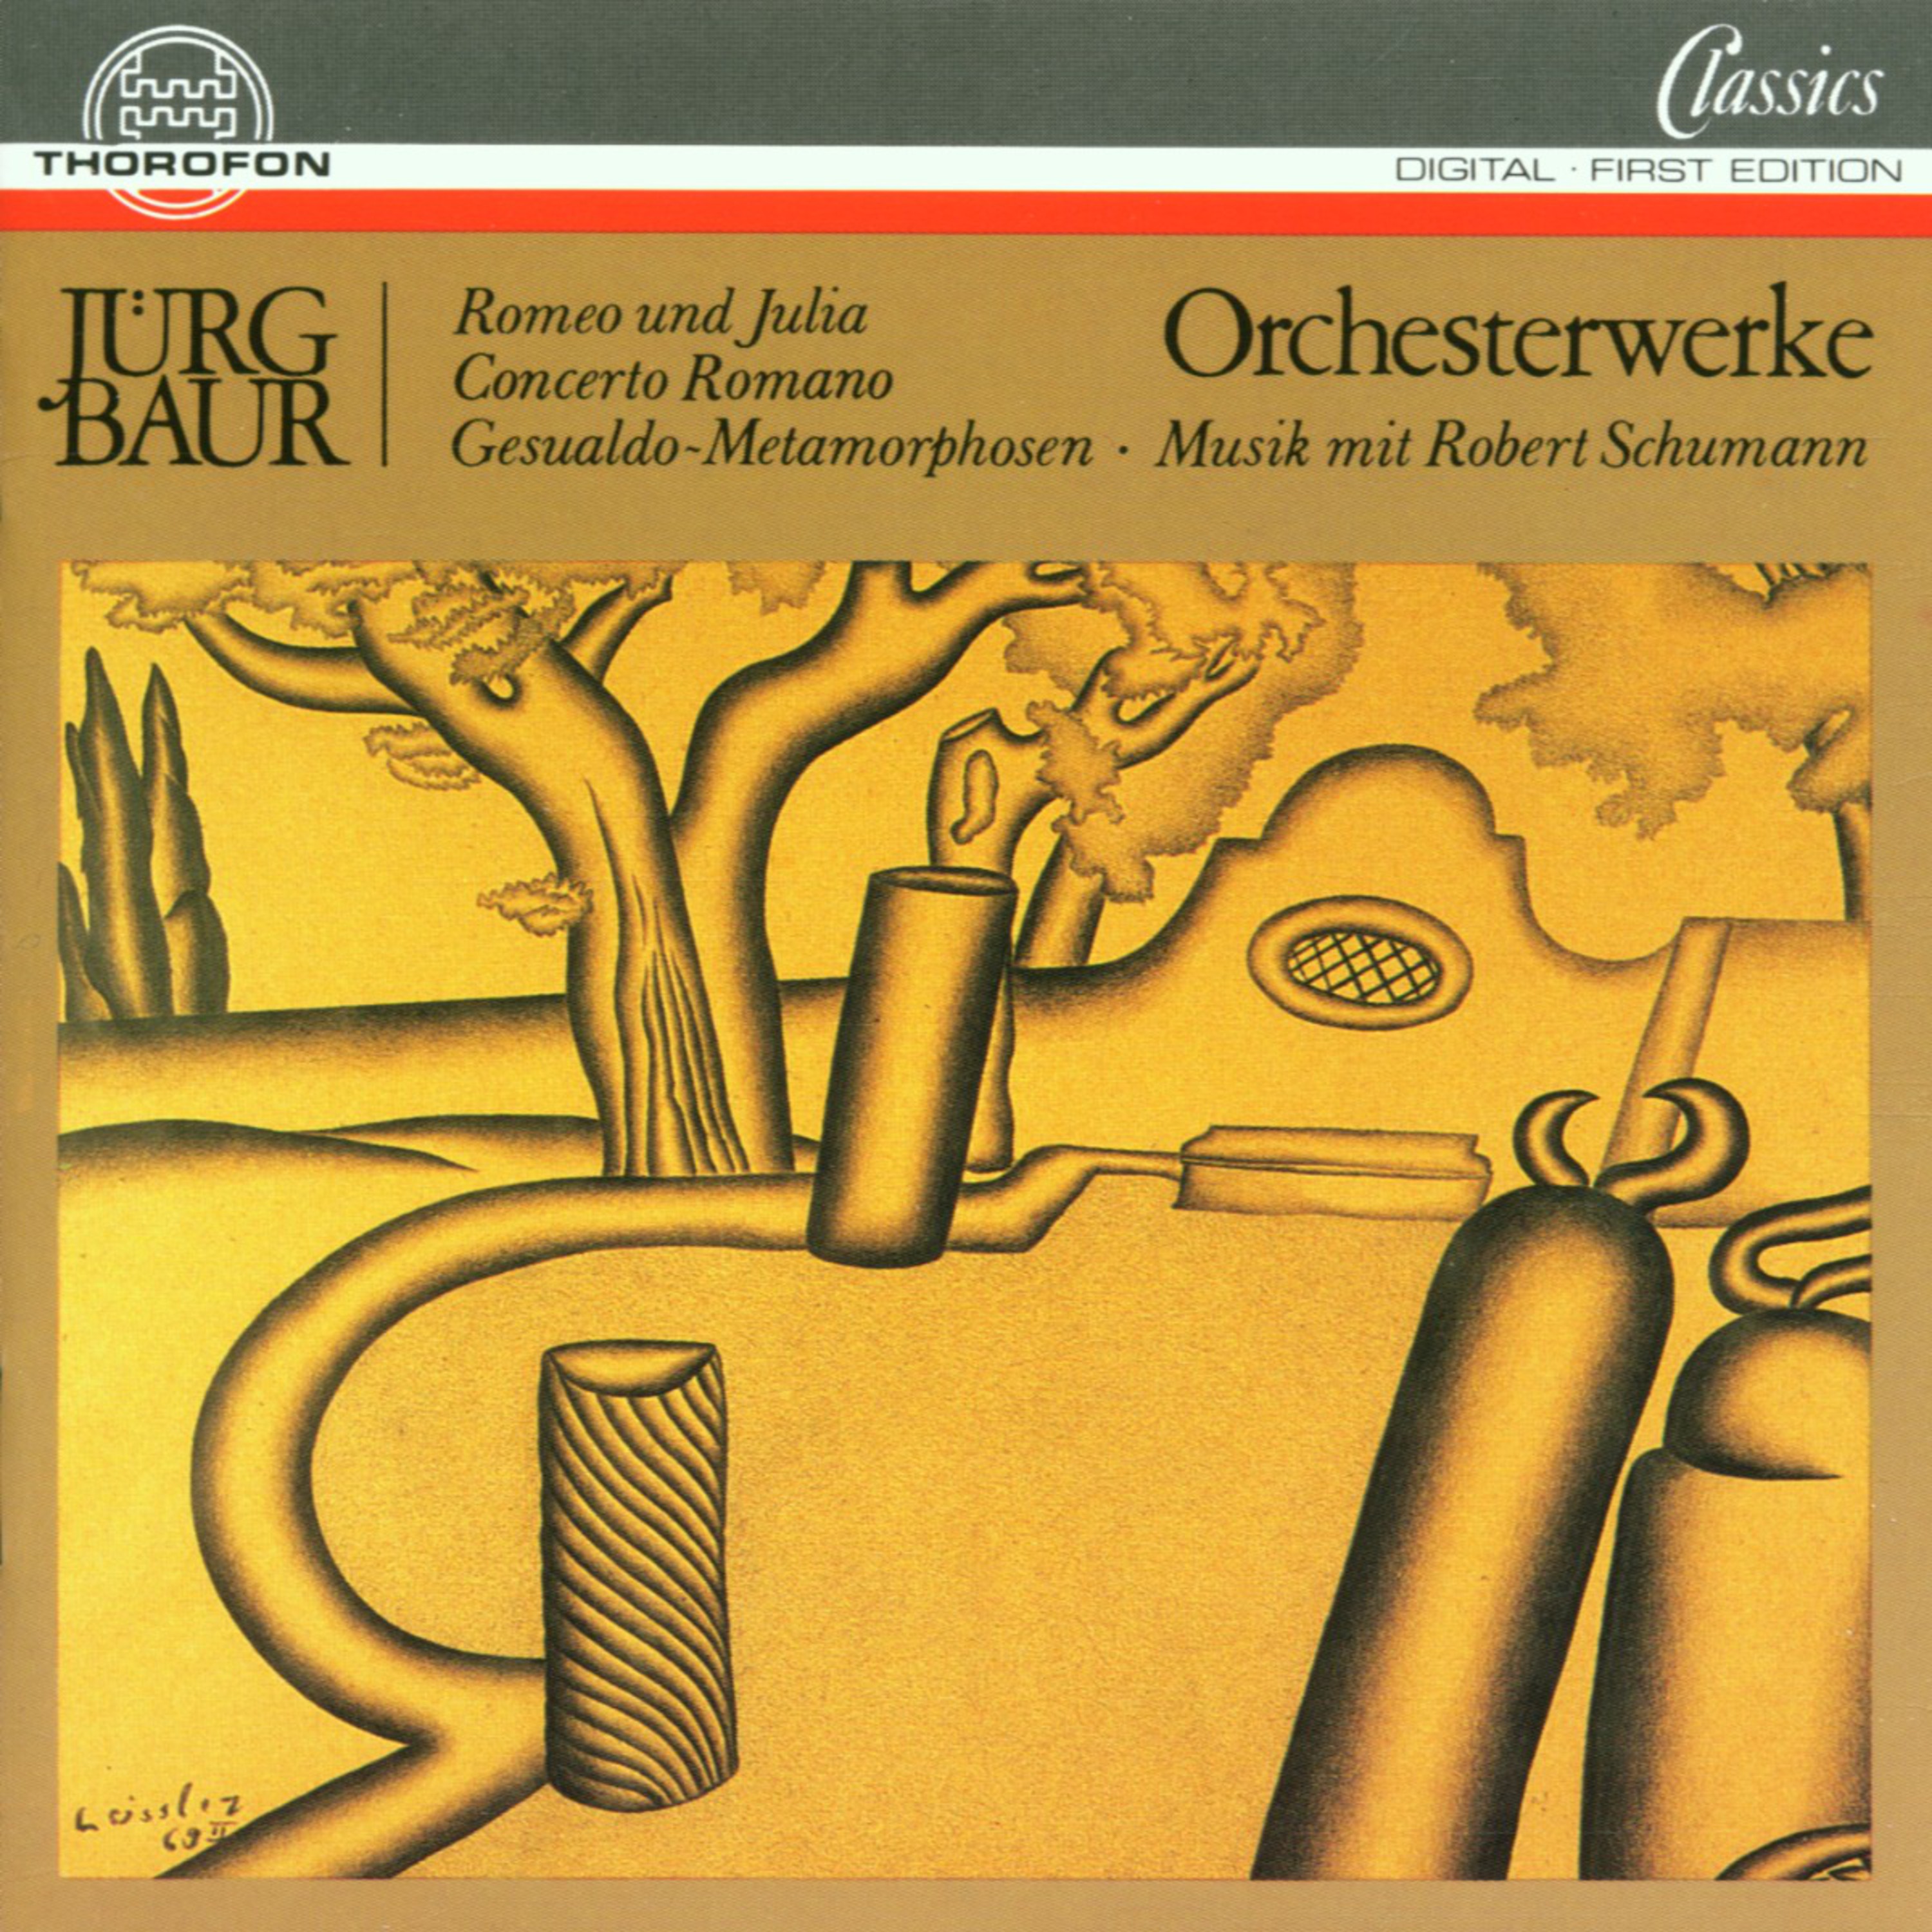 Concerto Romano fü r Oboe und Orchester: III. Corso